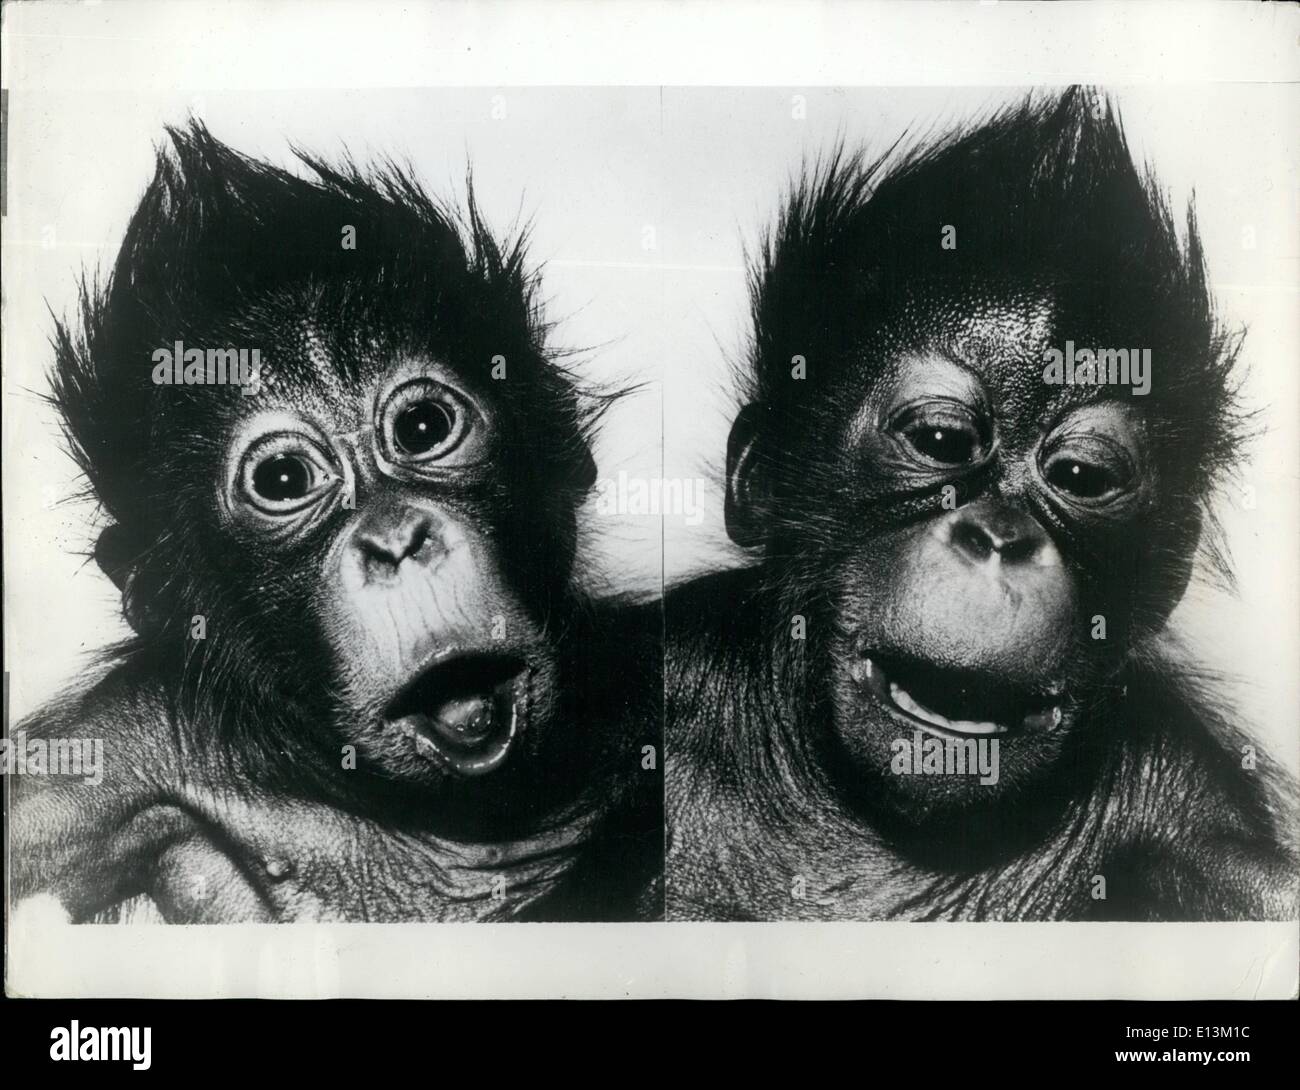 Mar 02, 2012 - Orangutan gemelli ancora in ospedale. Ancora in ospedale sono i gemelli orangutan del Monaco di Baviera zoo Hellabrunn . Fino ad ora sono state portate fino in incubatore e sono ancora sotto l'osservazione di un animale di Hellabrunn Ward. Nel frattempo, essi ora pesano tre volte tanto come quando sono nati. Nonostante il tempo doloroso quando i denti sono venuta attraverso i gemelli, maschio (sinistra) e femmina (a destra), è ovviamente una sensazione molto felice Foto Stock